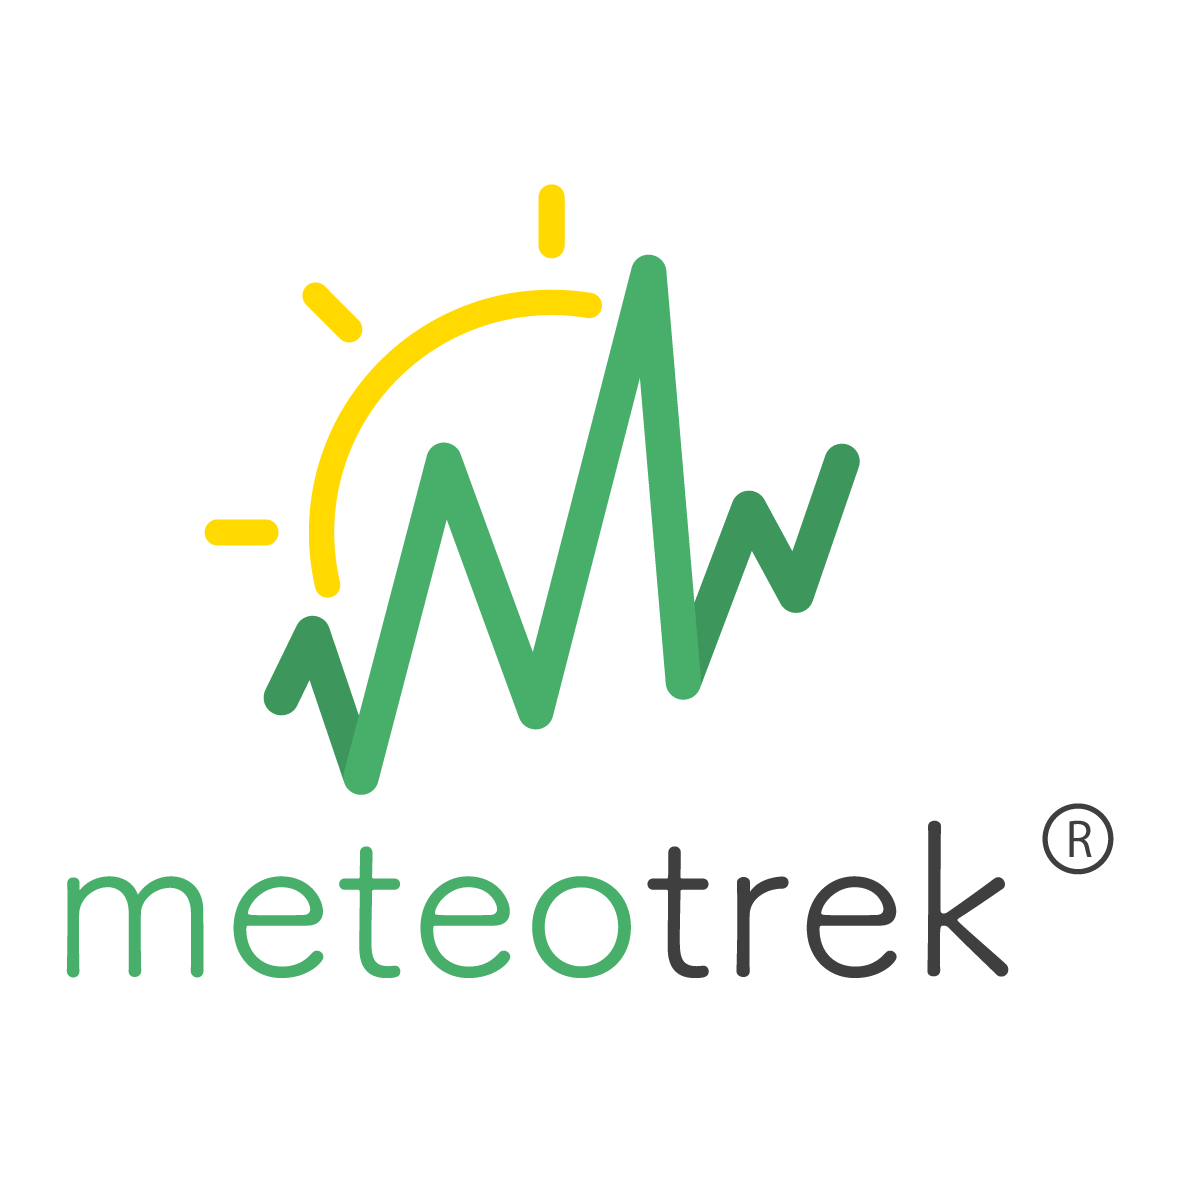 Meteotrek